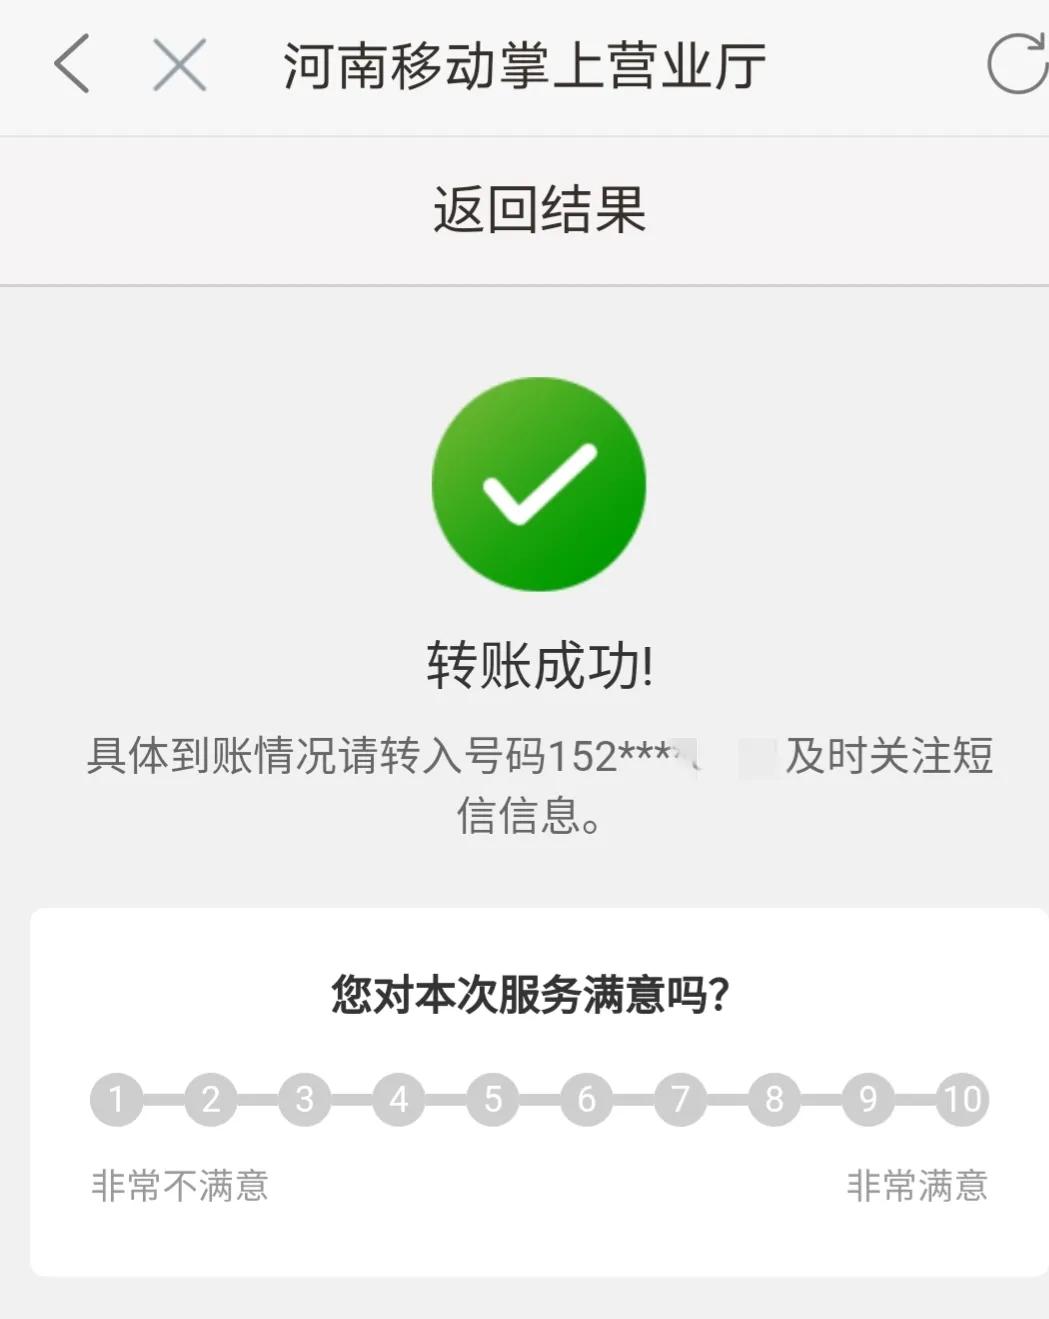 移动手机卡怎么注销在手机上，中国移动app注销手机卡步骤